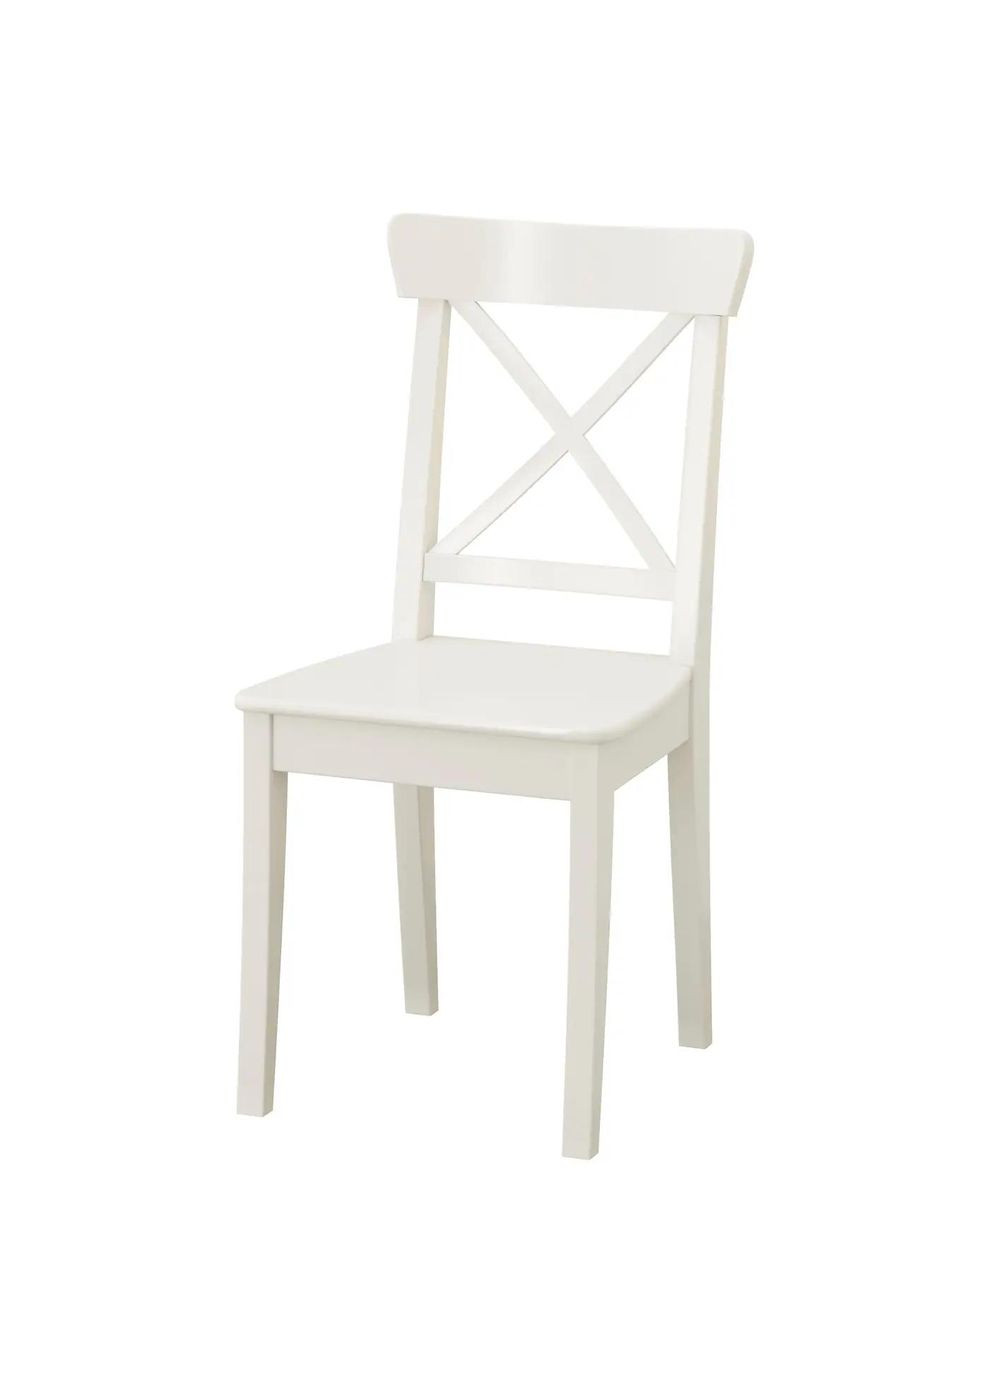 Стіл і 4 стільці ІКЕА INGATORP / INGOLF 155/215 см (s29917307) IKEA (278407876)